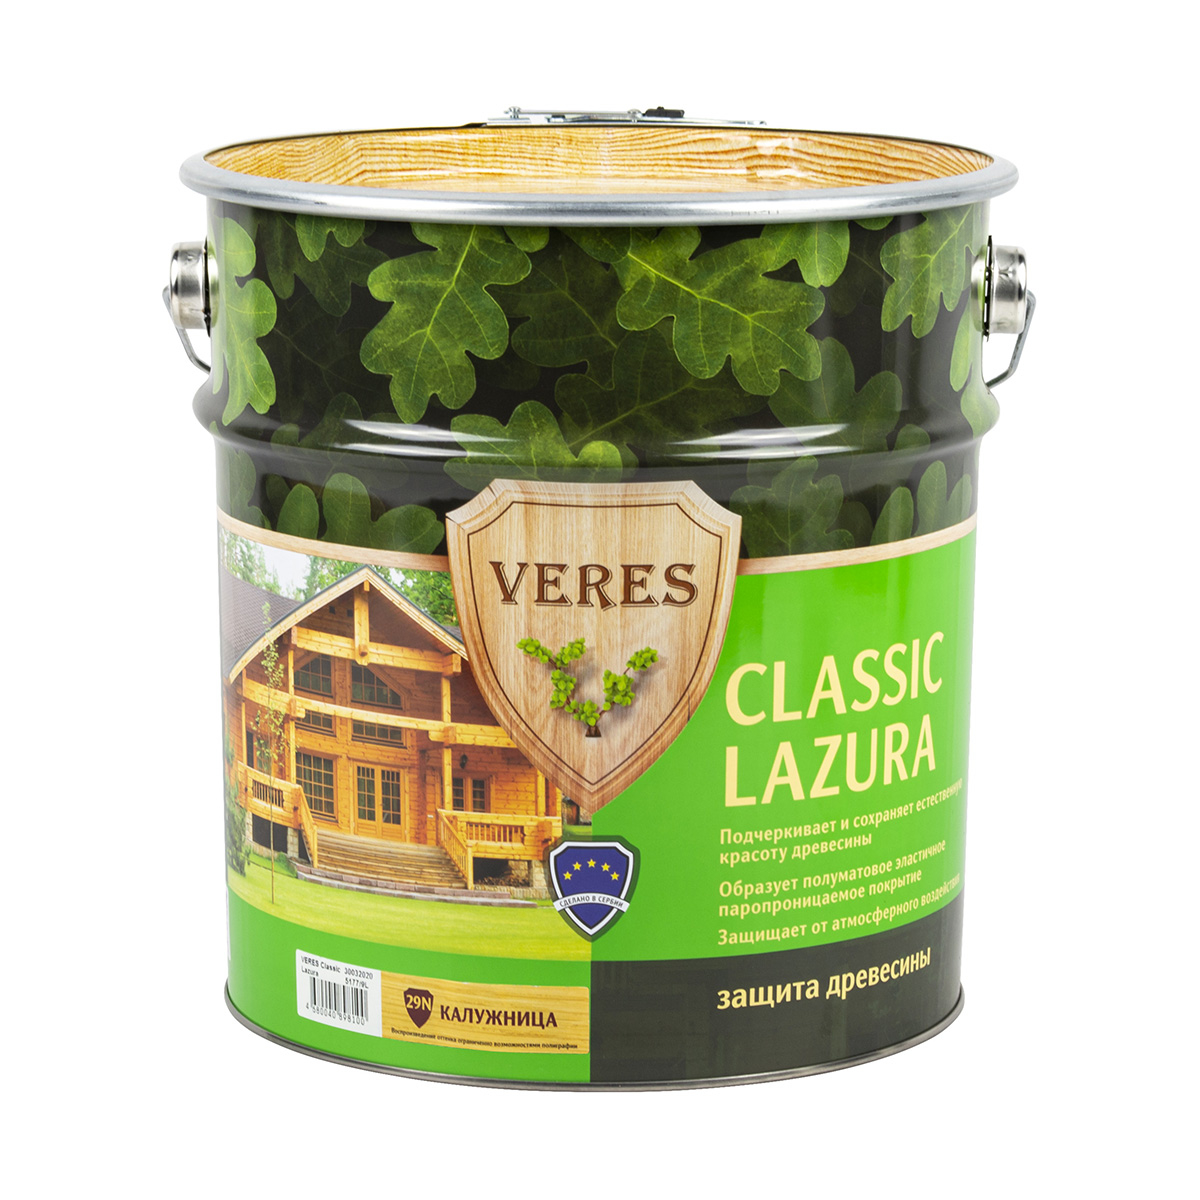 Пропитка Veres classic lazura №29 калужница 9 л